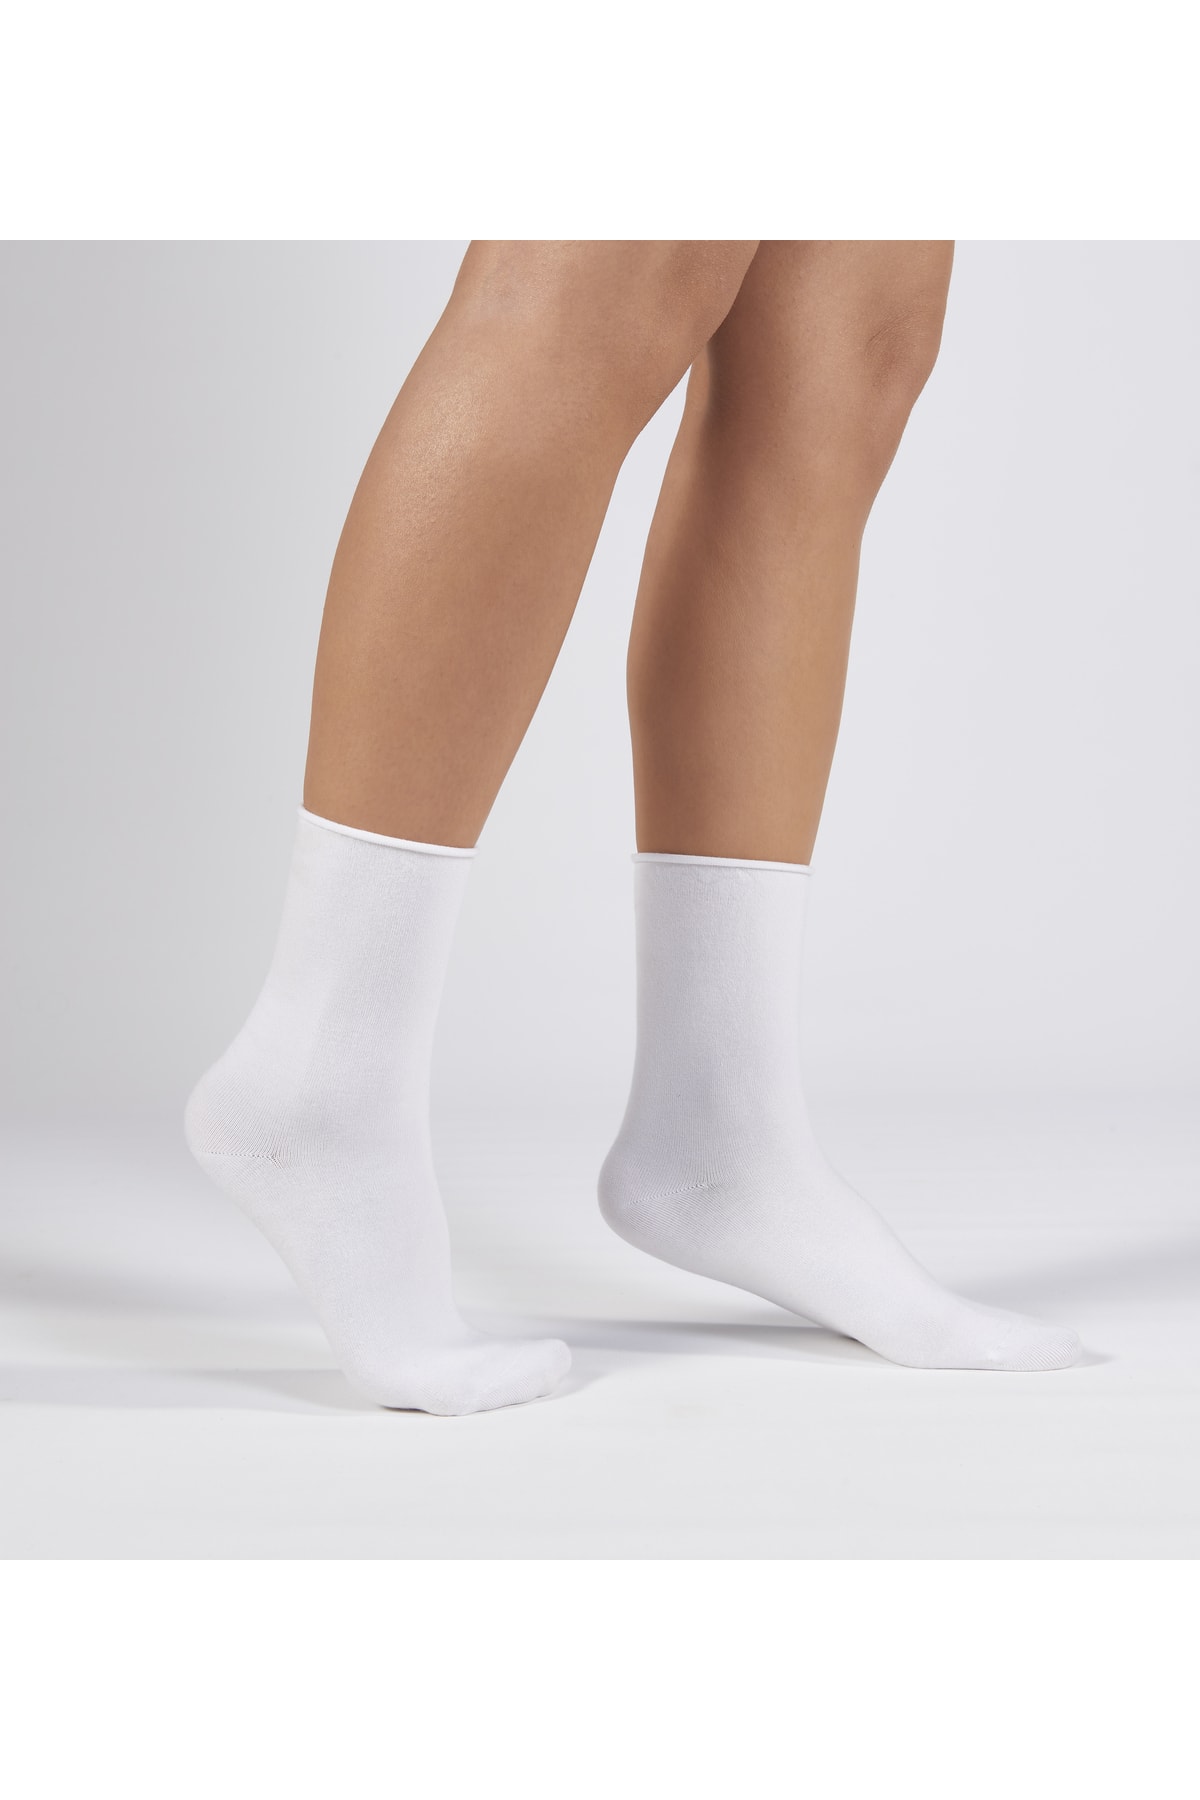 Forwena 2'li Paket Beyaz Modal Lastiksiz Dikişsiz Kadın Soket Çorap